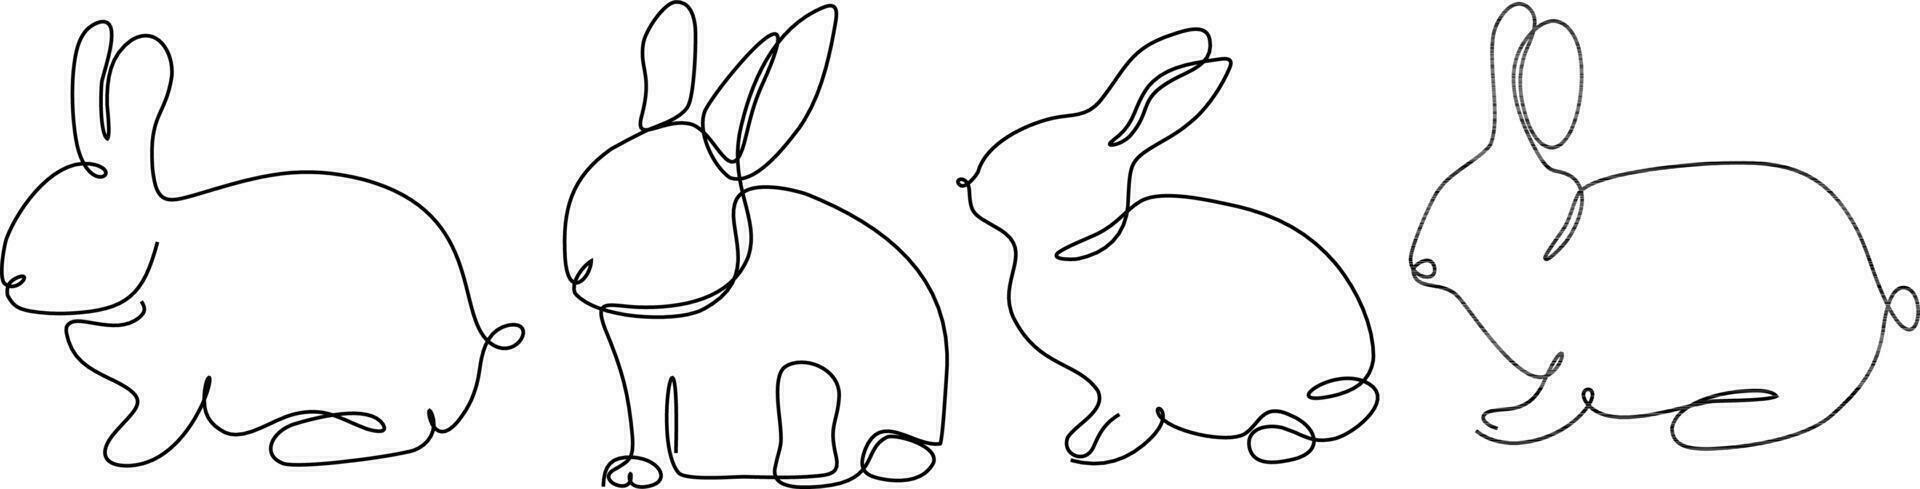 kanin kontinuerlig linje uppsättning illustration vektor